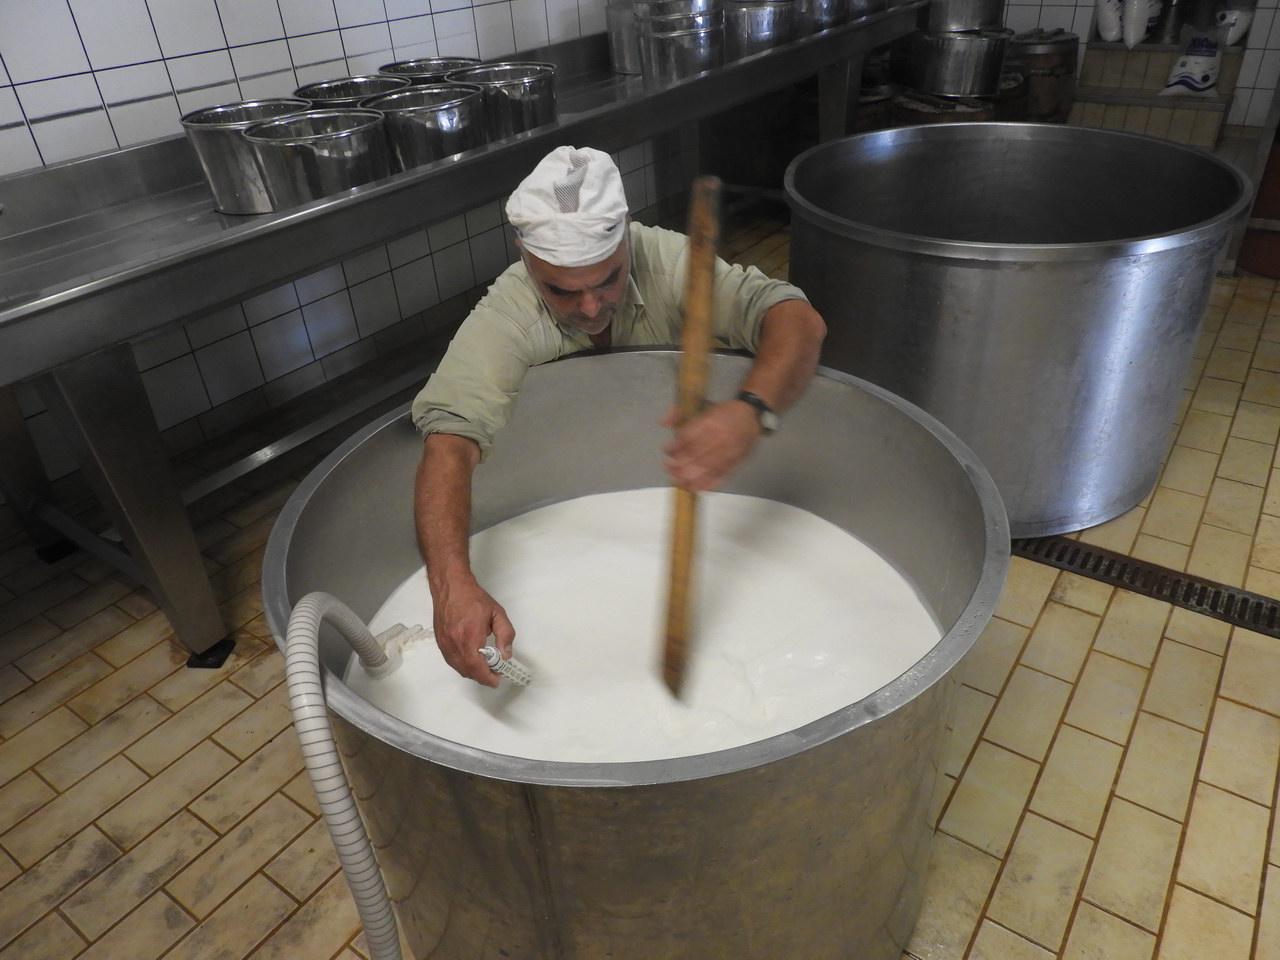 Μεταξύ των νησιών του Ιονίου, στην Κεφαλονιά παράγεται η μεγαλύτερη ποσότητα γάλακτος